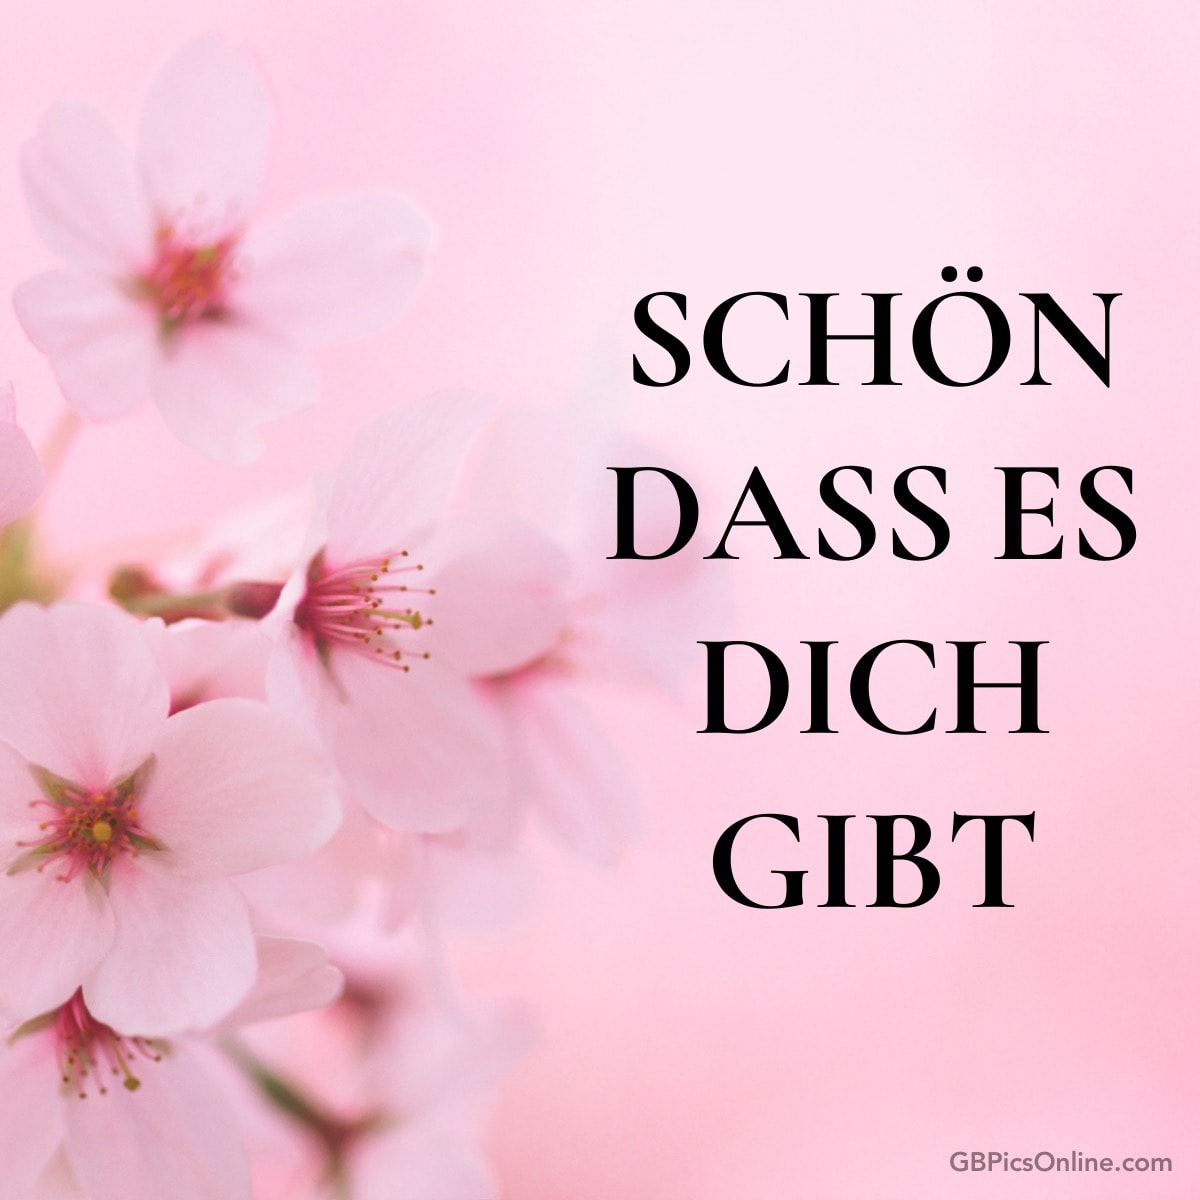 Rosa Blüten mit Text „Schön dass es dich gibt“ auf rosa Hintergrund